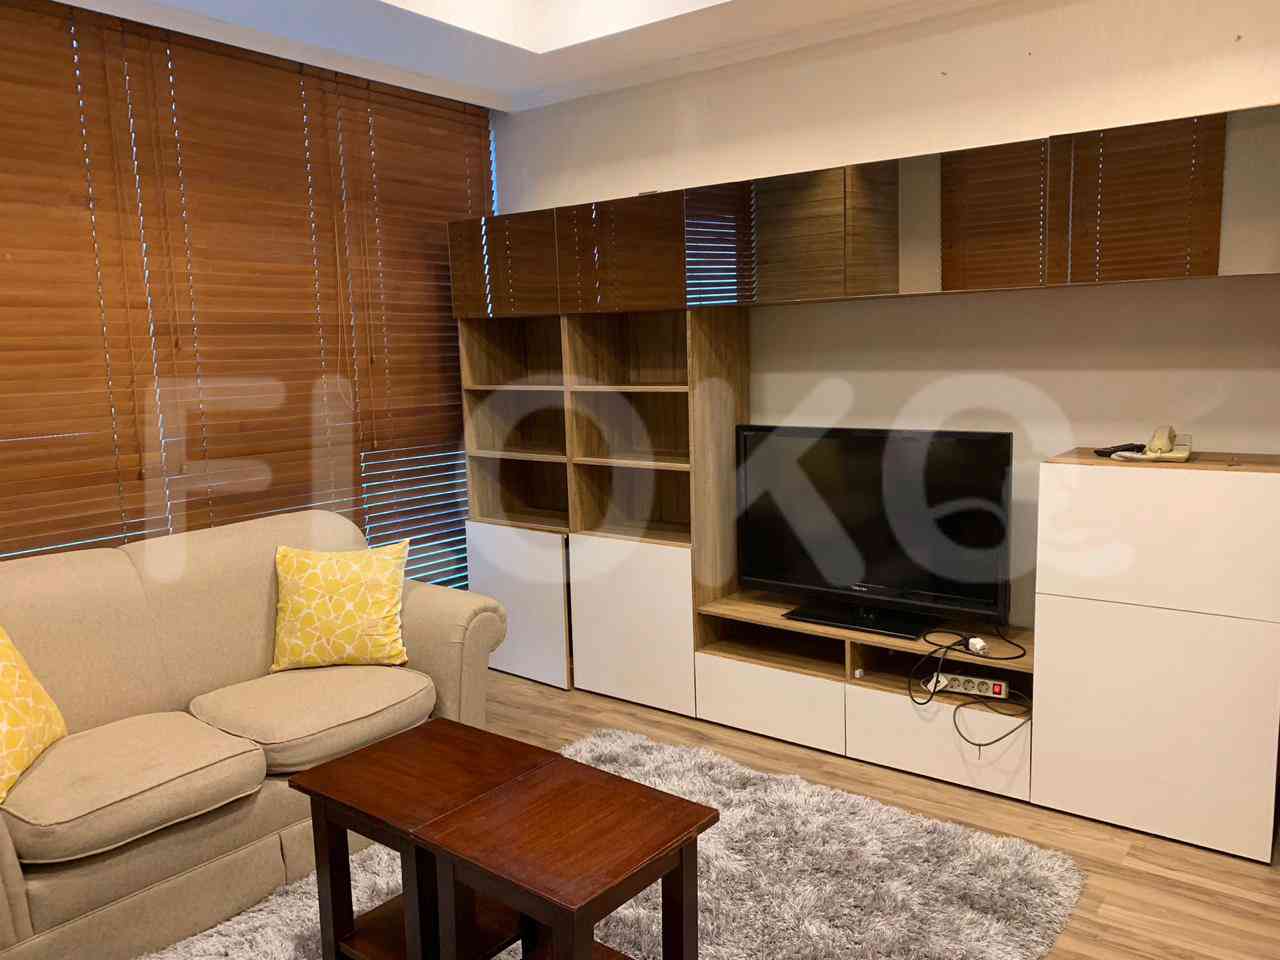 4 Bedroom on 10th Floor for Rent in Puri Imperium Apartment - fkua44 6